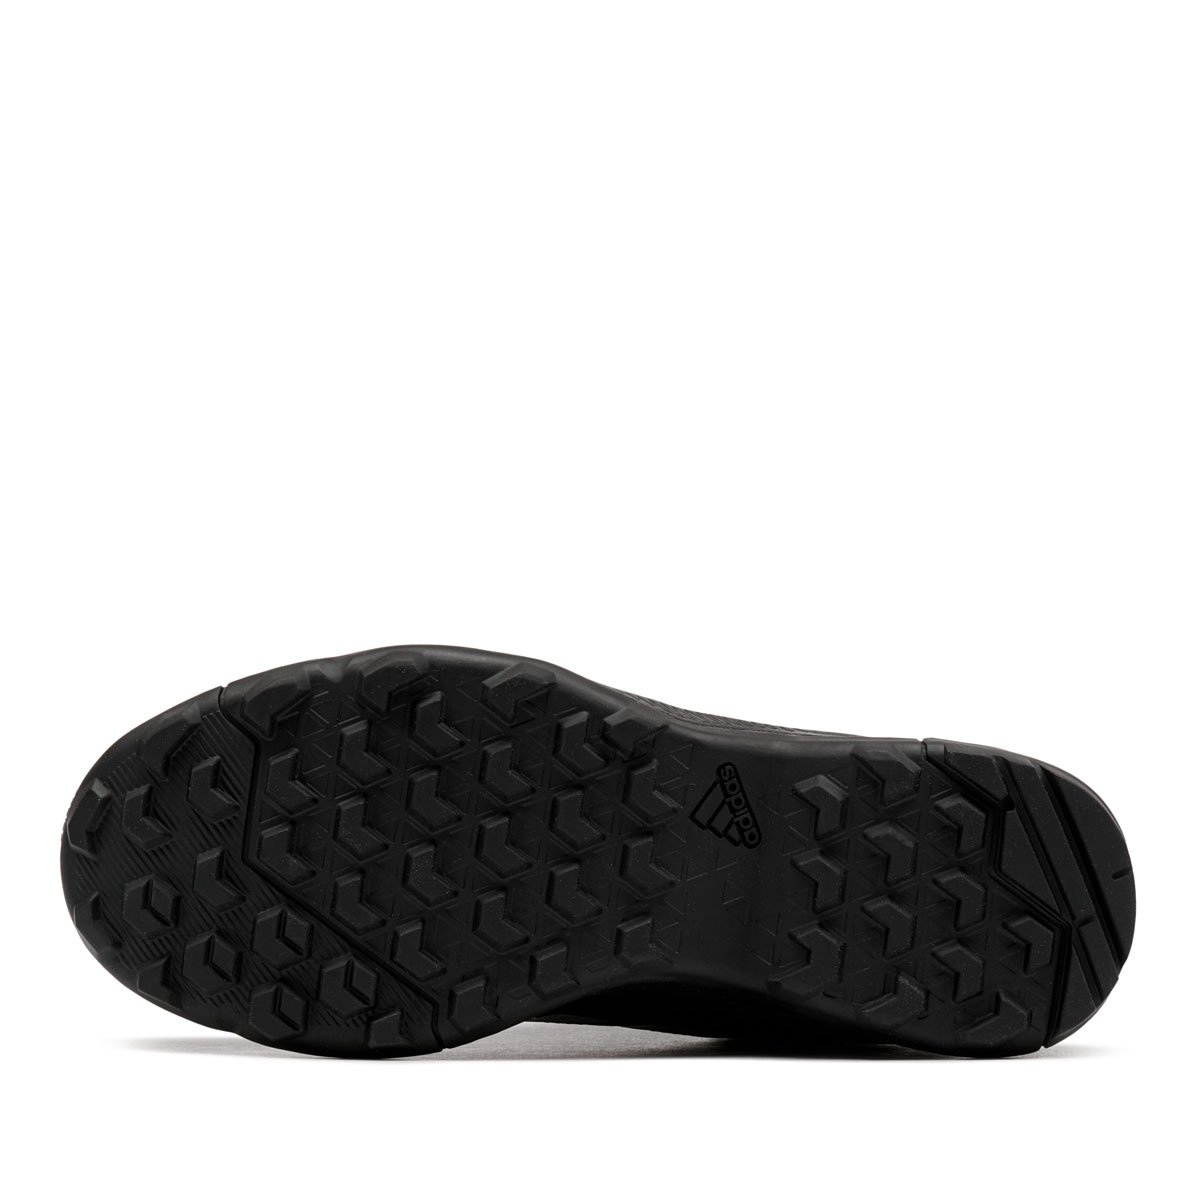  adidas Terrex Eastrail Gore-Tex Мъжки спортни обувки ID7845